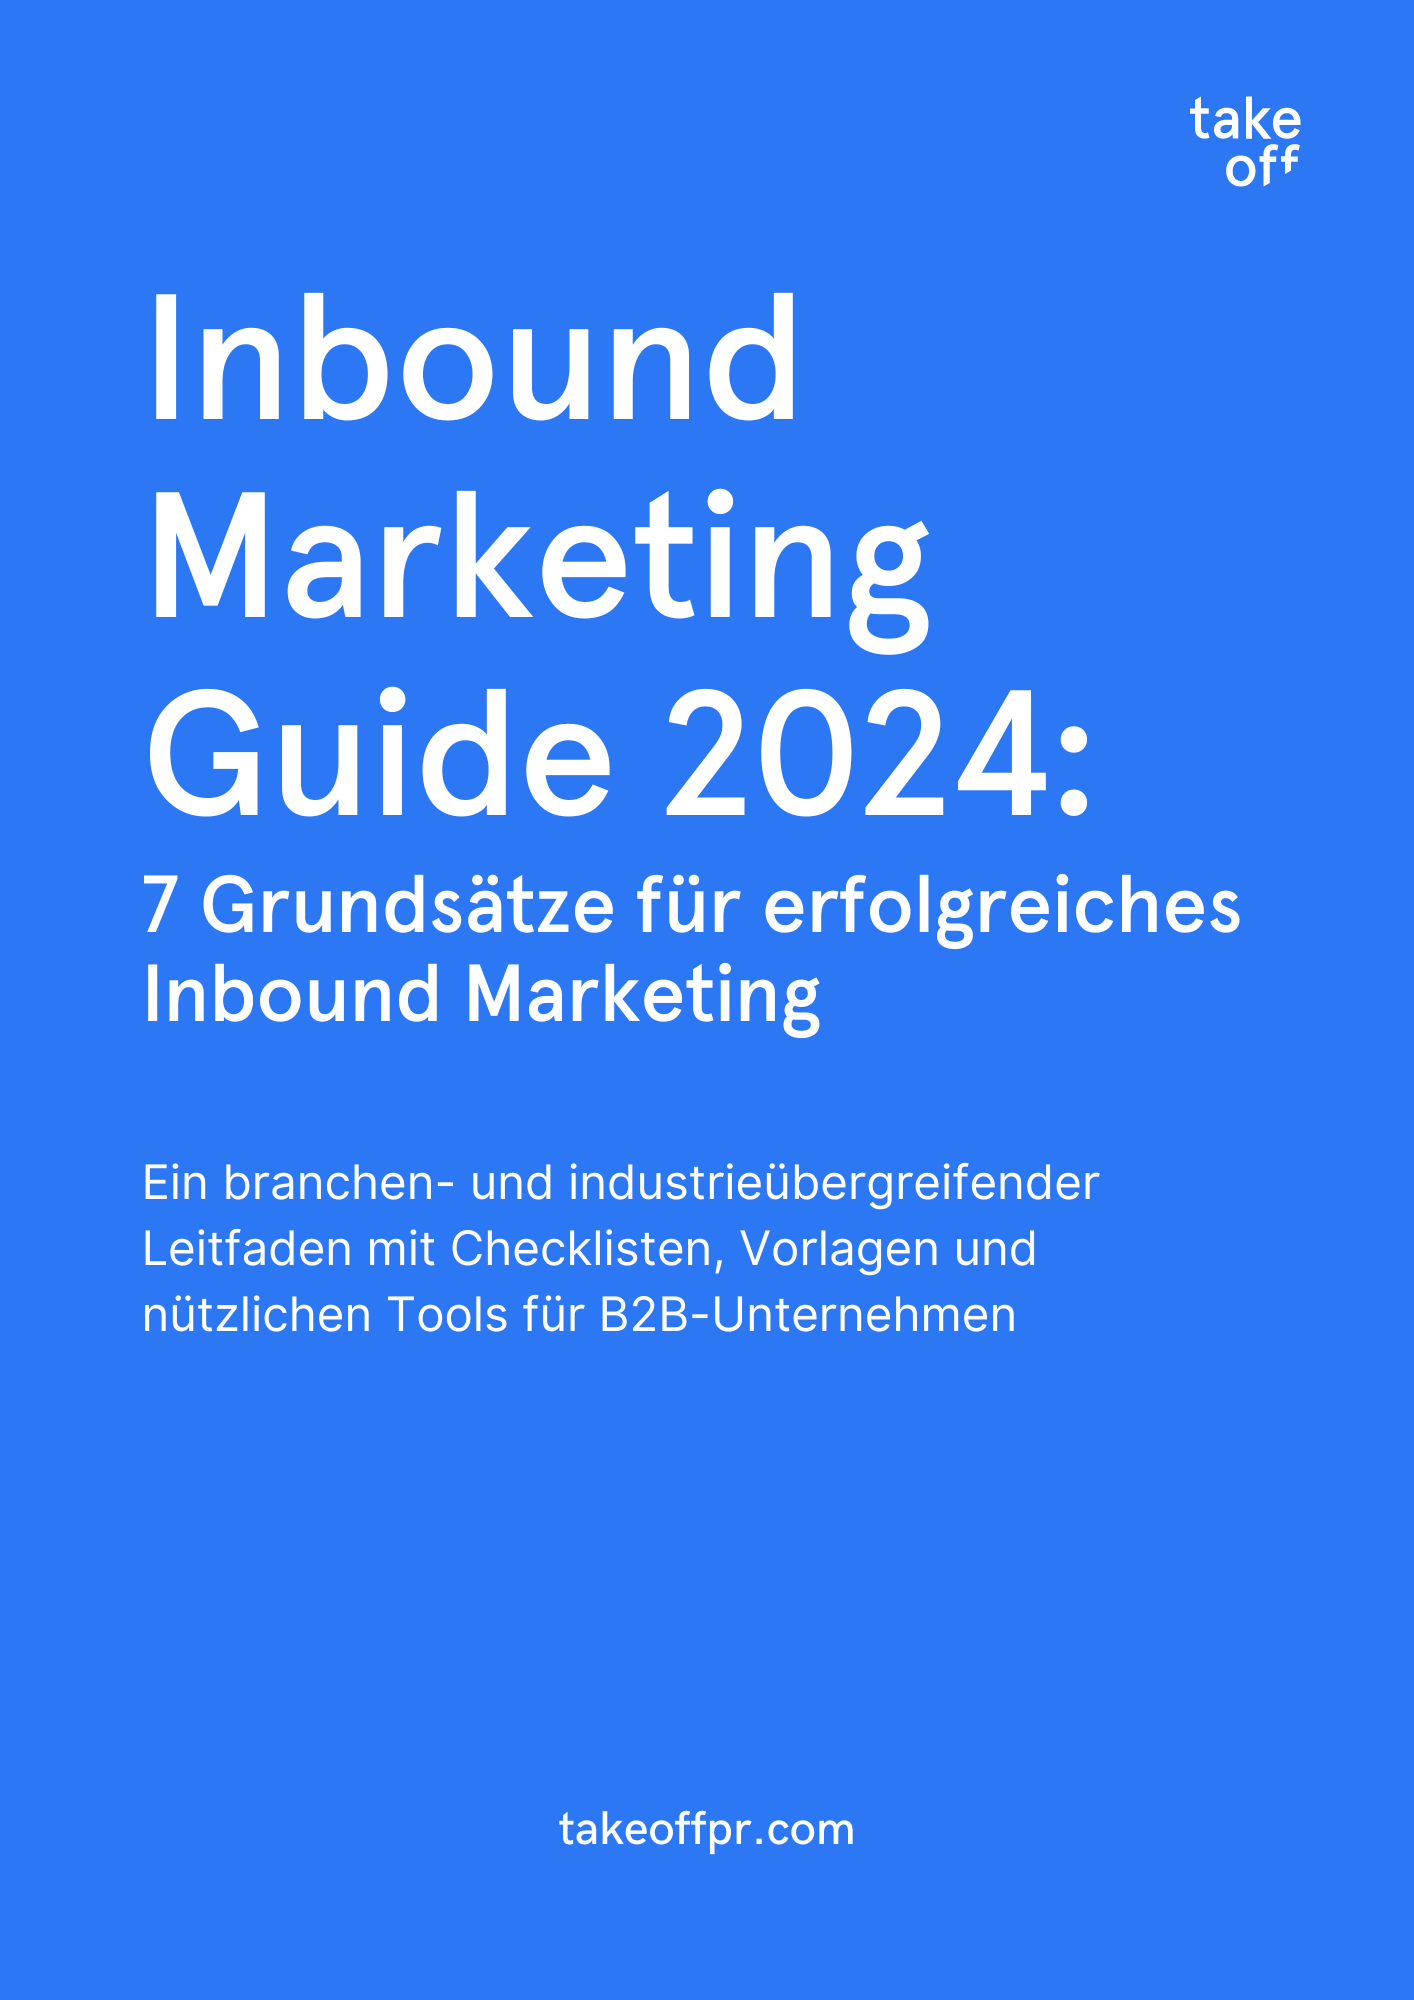 Inbound Marketing Guide 2024